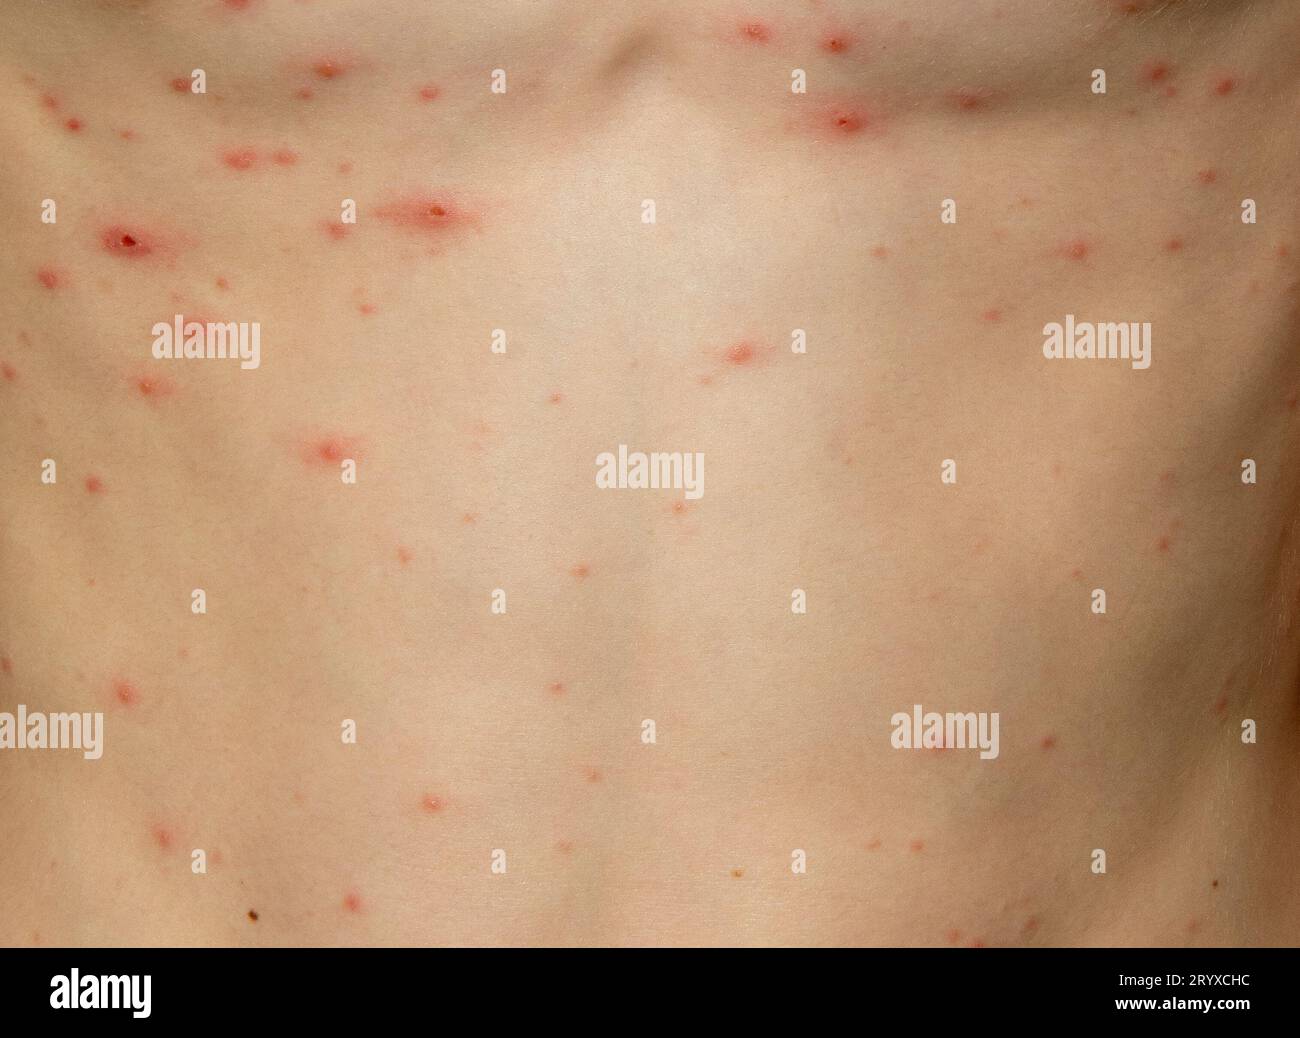 Eruzione cutanea della varicella su un corpo di un giovane ragazzo. La varicella è una malattia contagiosa causata dal virus varicella-zoster (VZV). Foto Stock